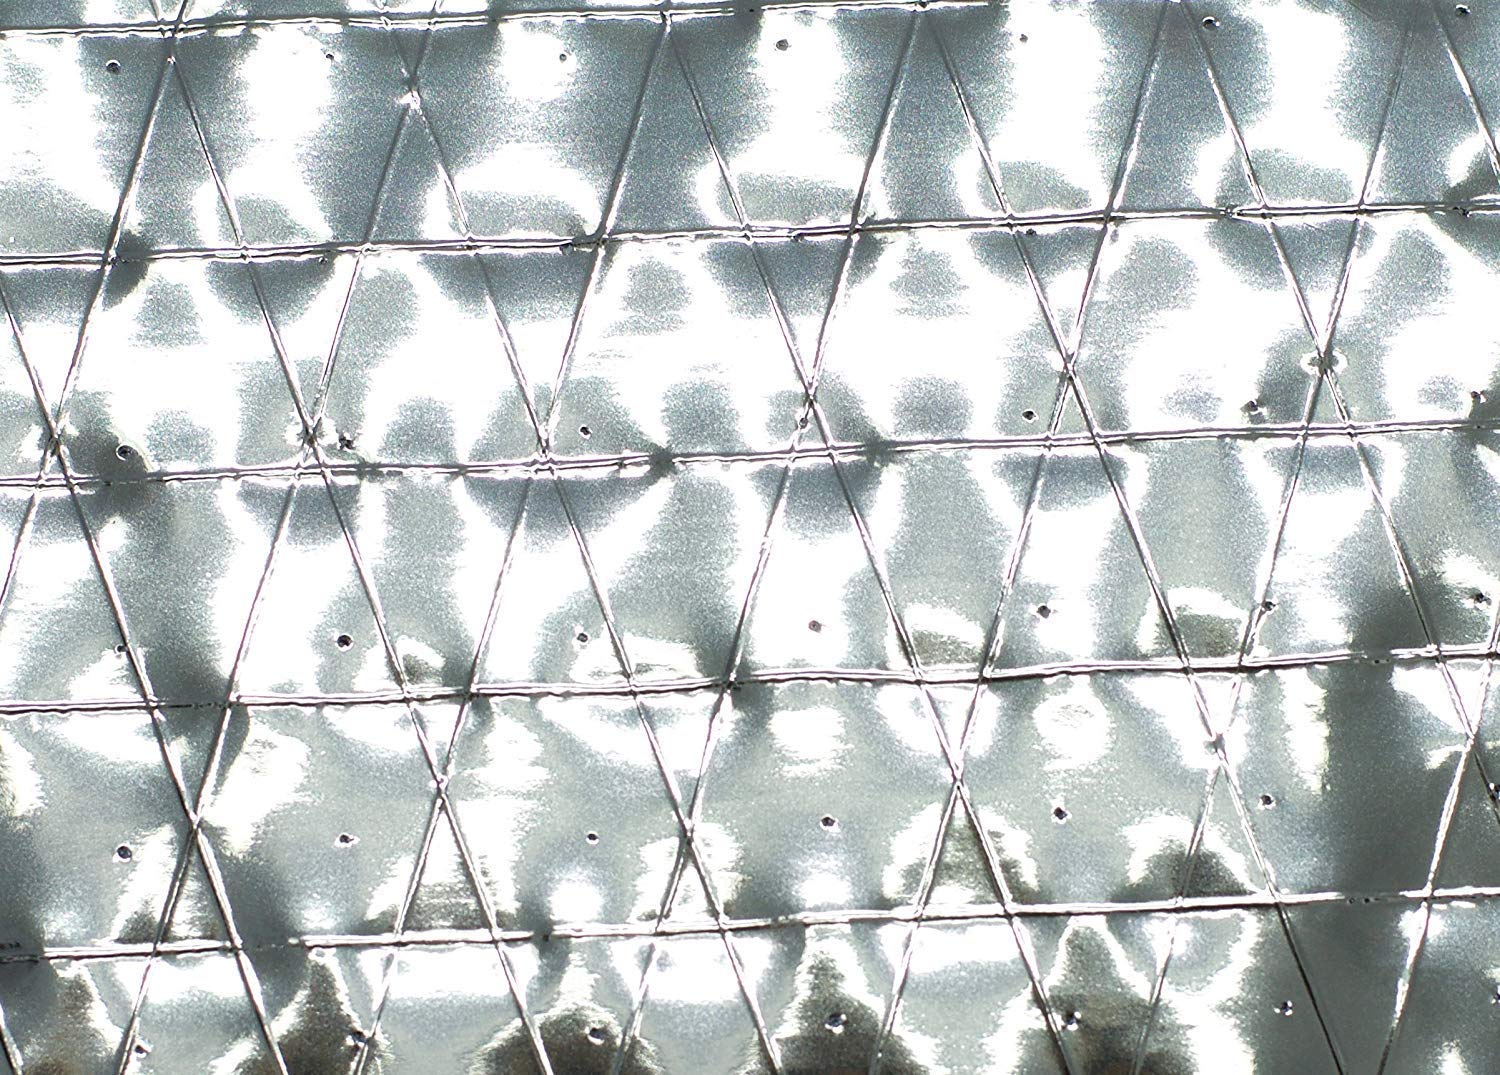 2000 sqft Diamond Super shield Solar Attic Foil Reflective Insulation 4 mil 4x250 - image 3 of 5